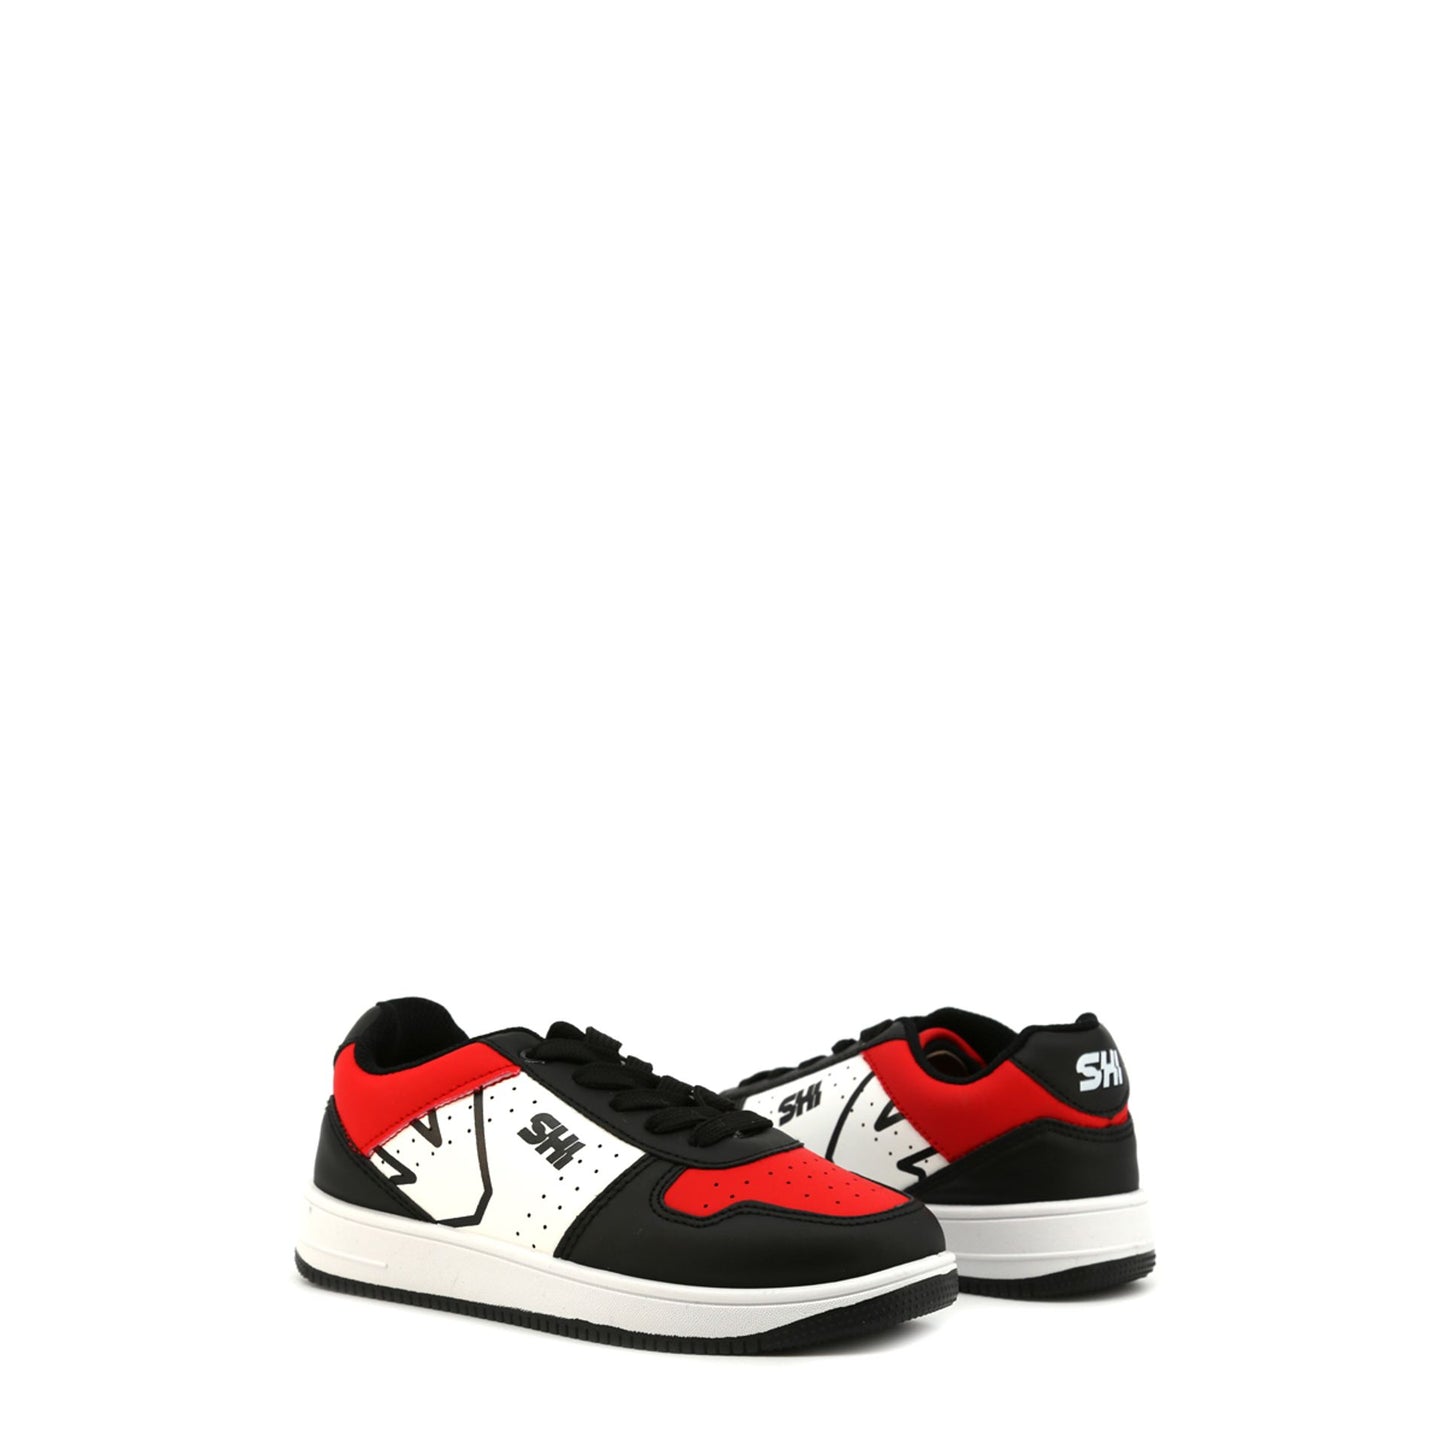 Sneakers da bambino nera e rossa ideale per correre